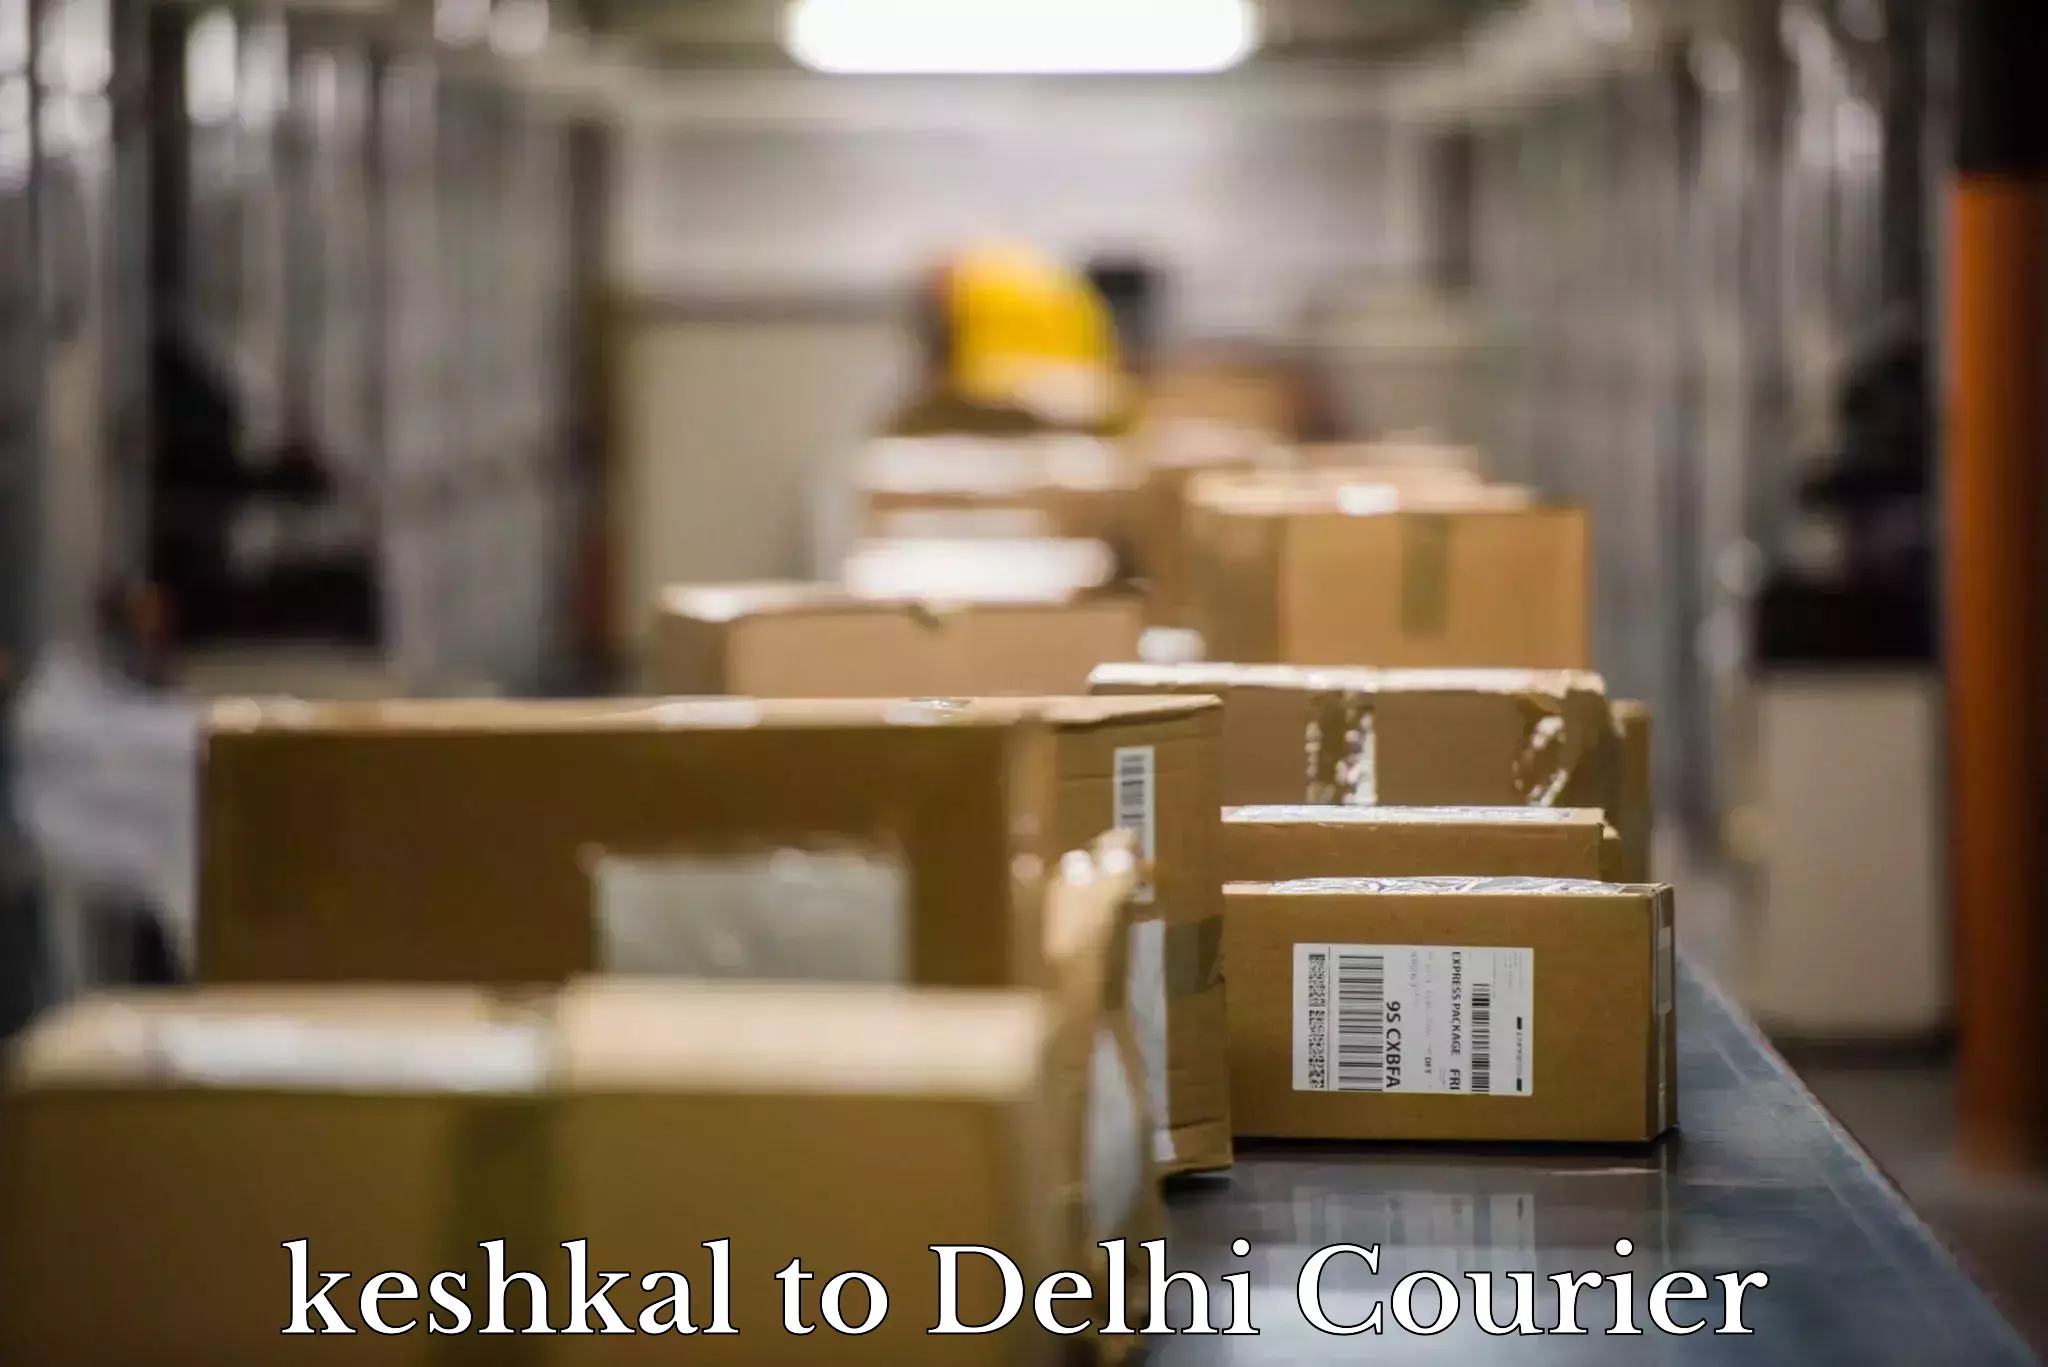 Stress-free furniture moving keshkal to Delhi